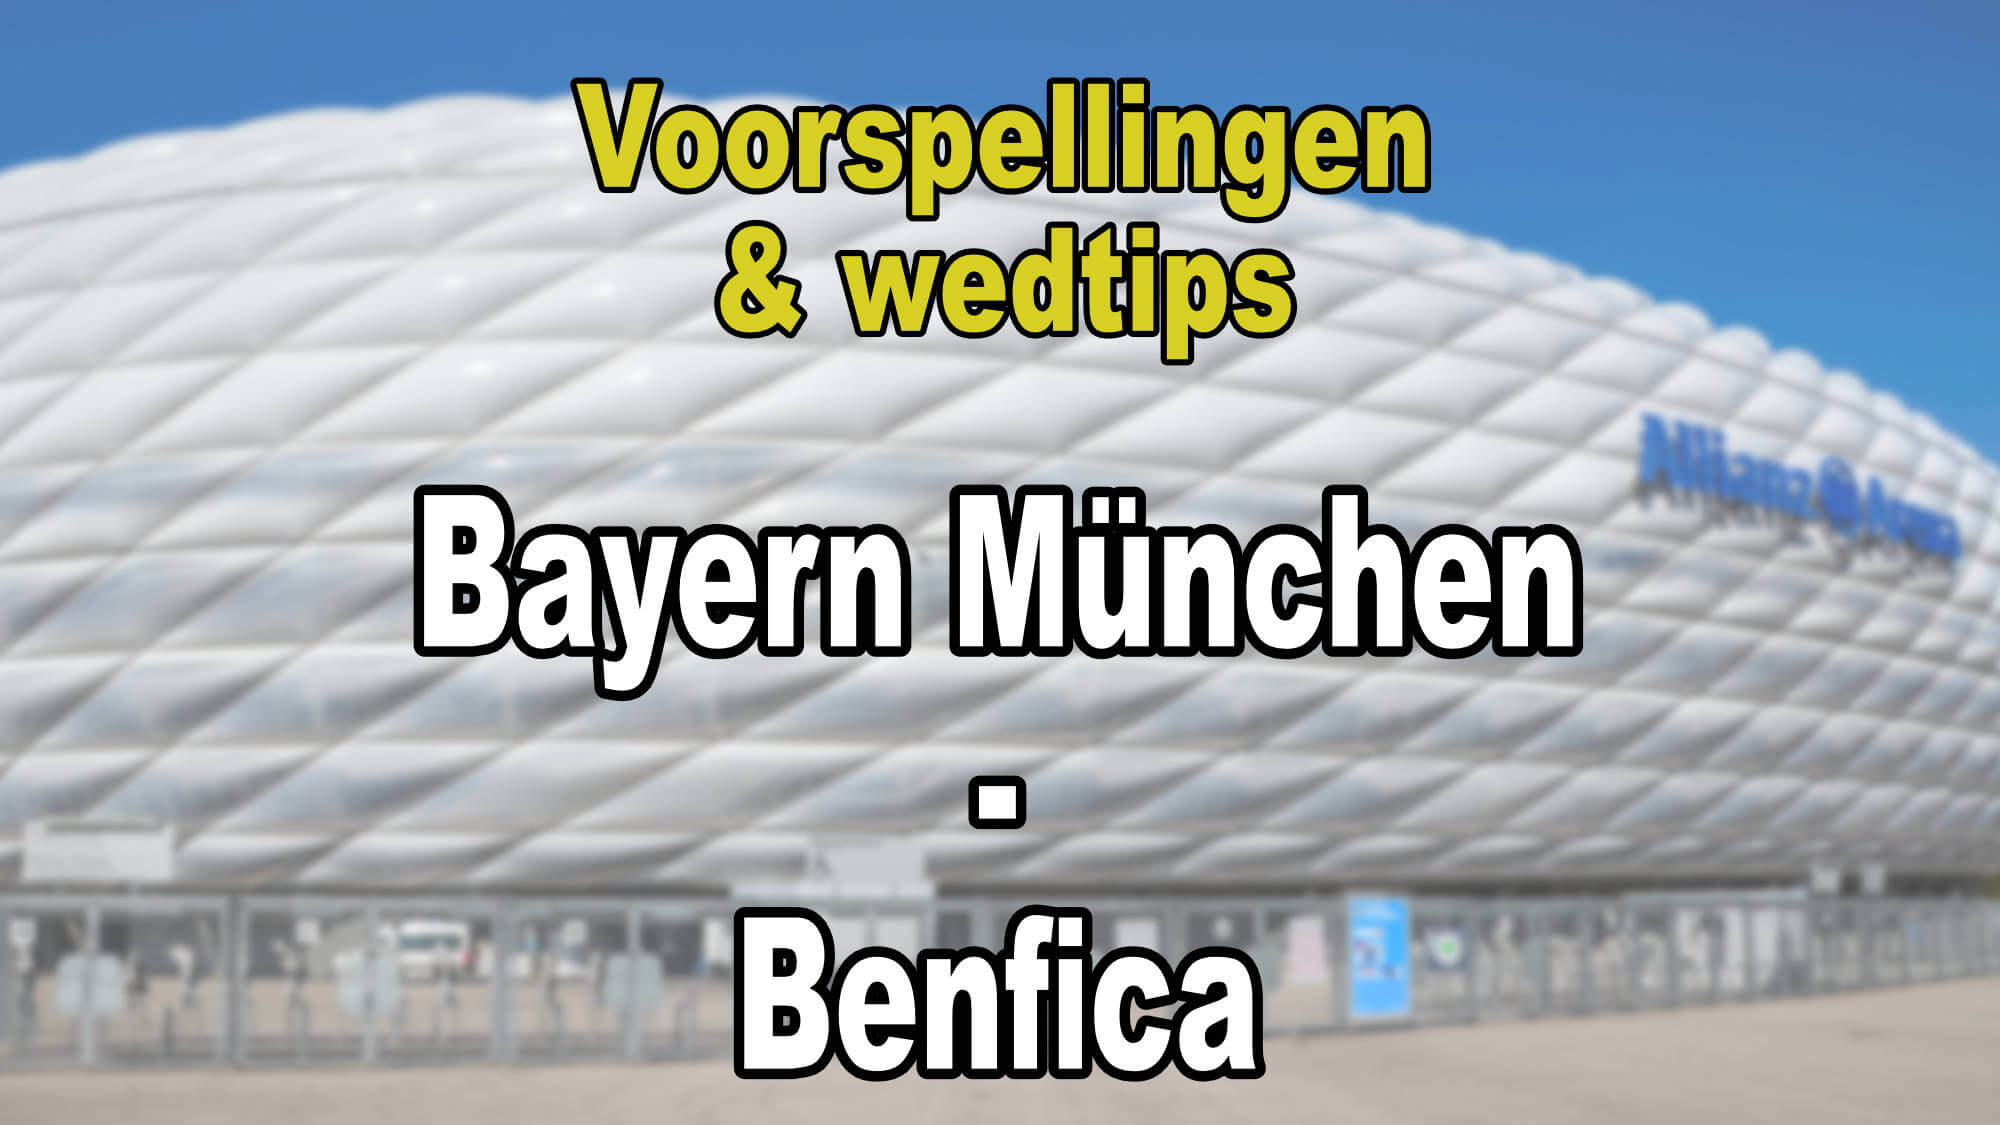 Bayern München - Benfica voorspellingen